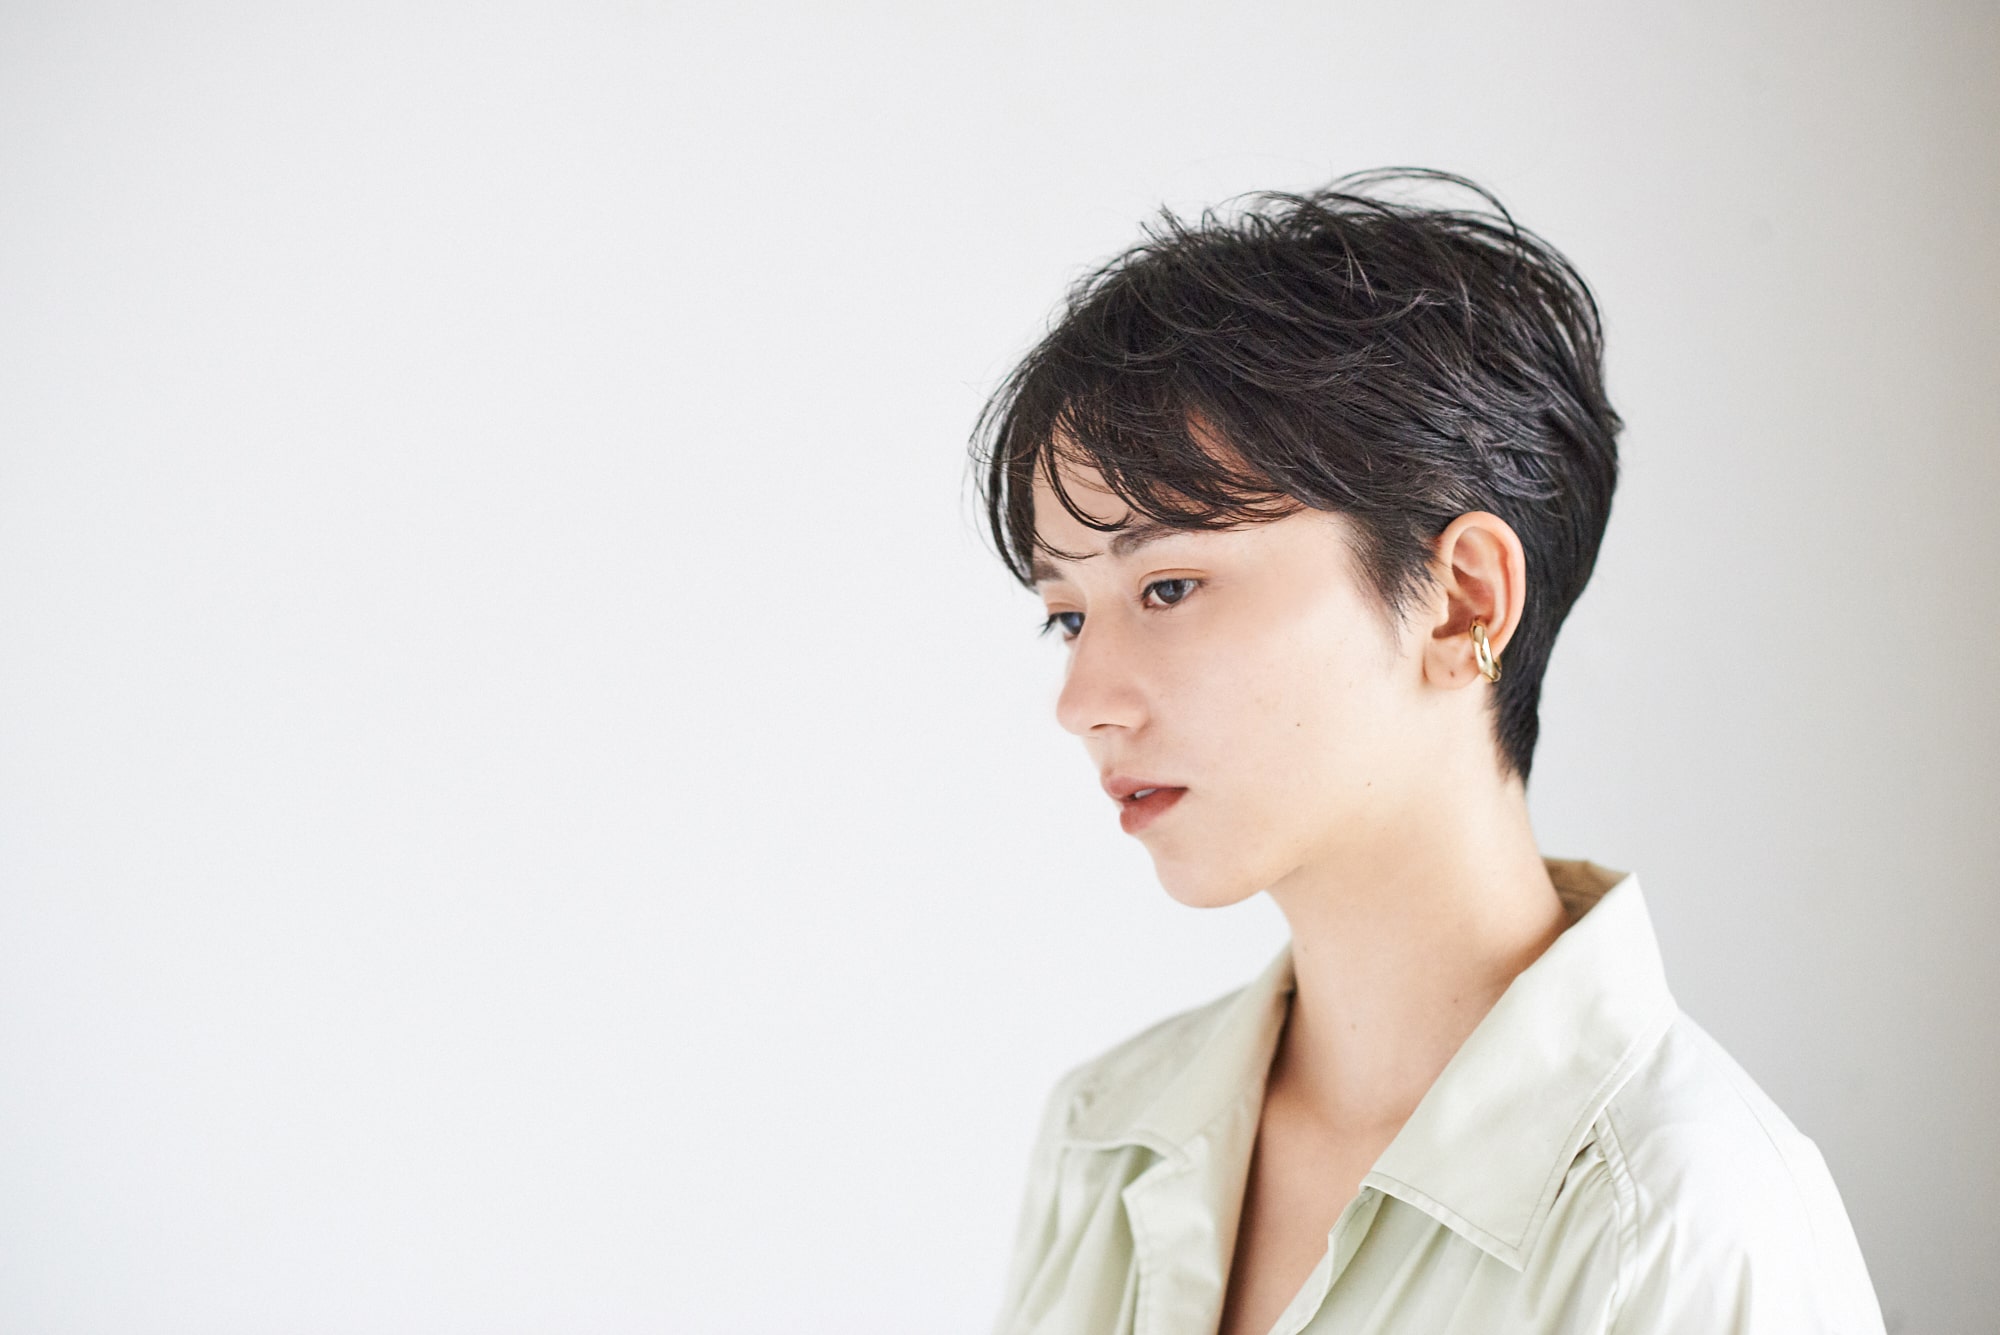 美容師のカット技術 Kate 豊田光信さん流 ツーセクションで作るジェンダーレスな黒髪ショート 2 モアリジョブ